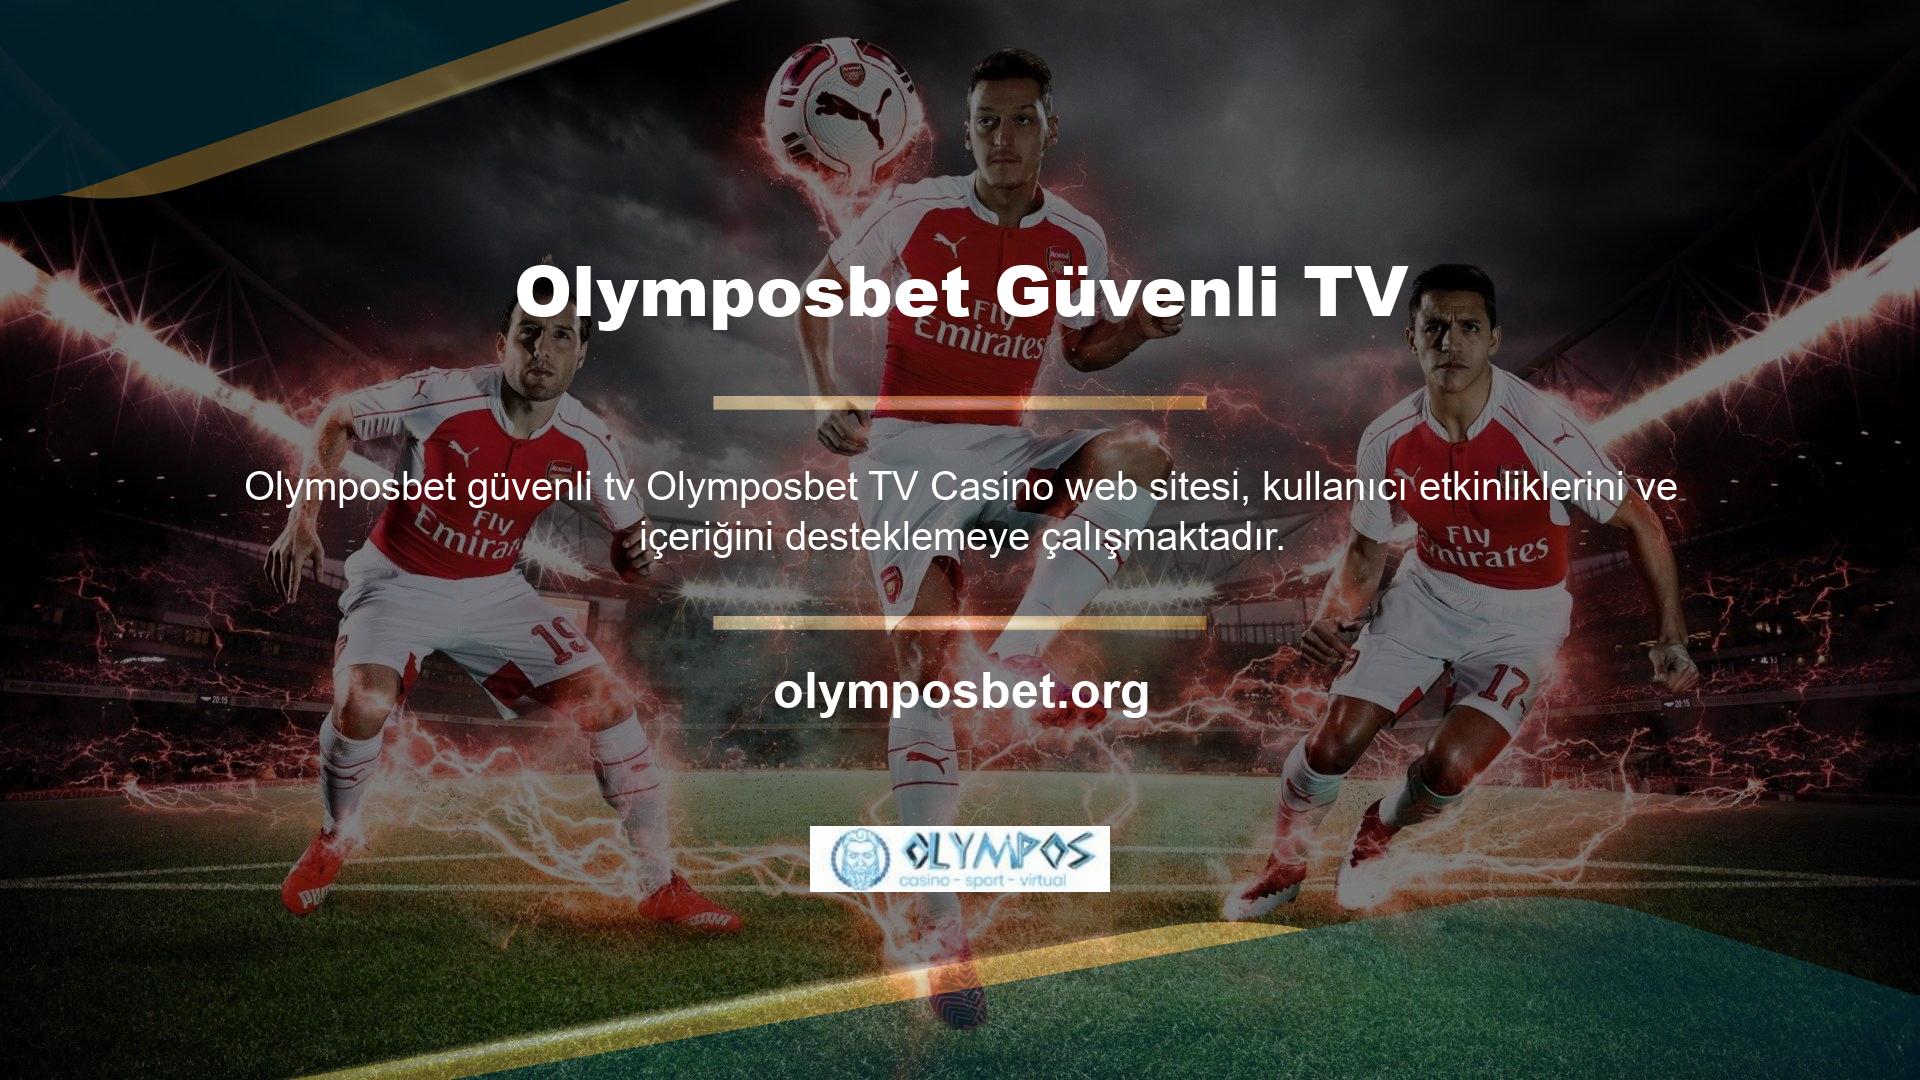 Bahislerini online sisteme aktarmak isteyen müşterilerin ilk adreslerinden biri olan Olymposbet TV, birçok özelliğiyle tanınmaktadır